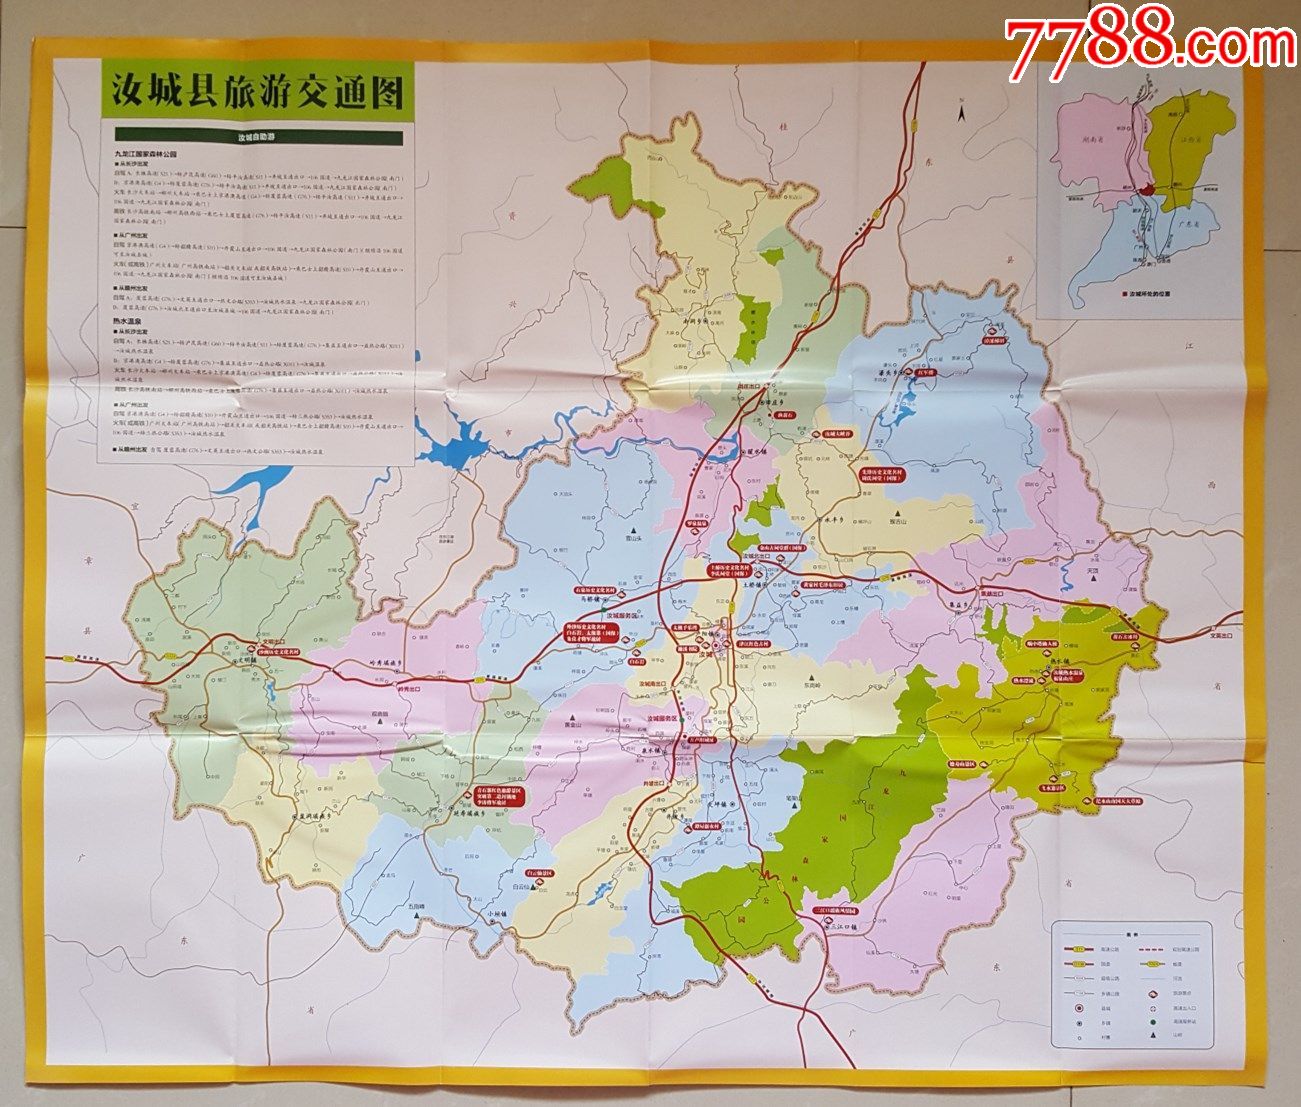 湖南郴州暖水温泉景区-广州泊泉风景园林工程设计有限公司